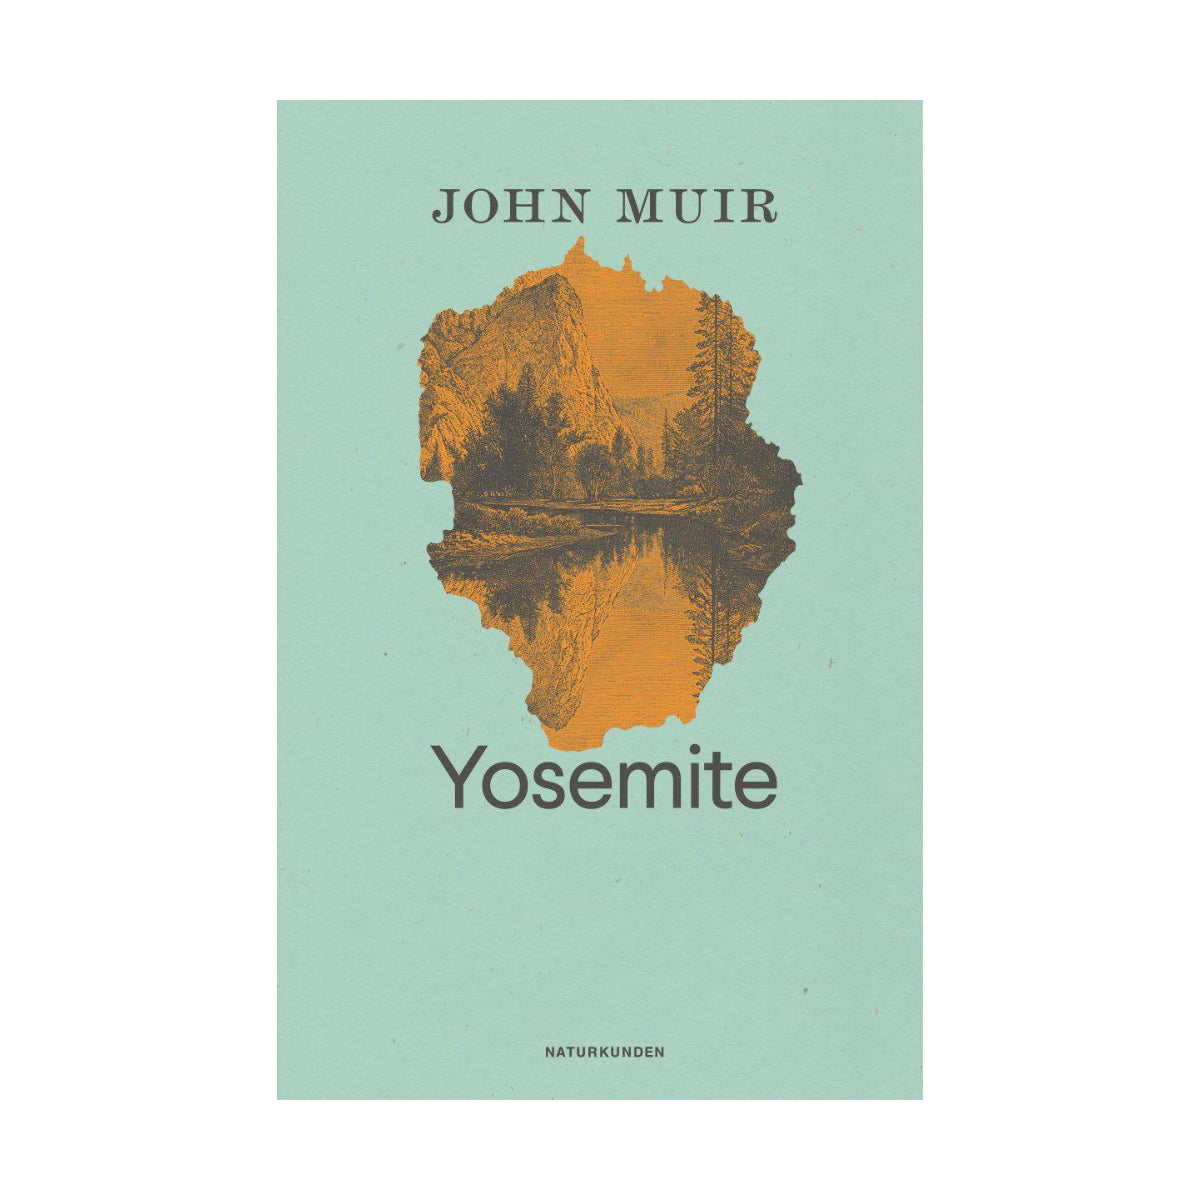 Matthes & Seitz – Buch YOSEMITE von John Muir - WILDHOOD store